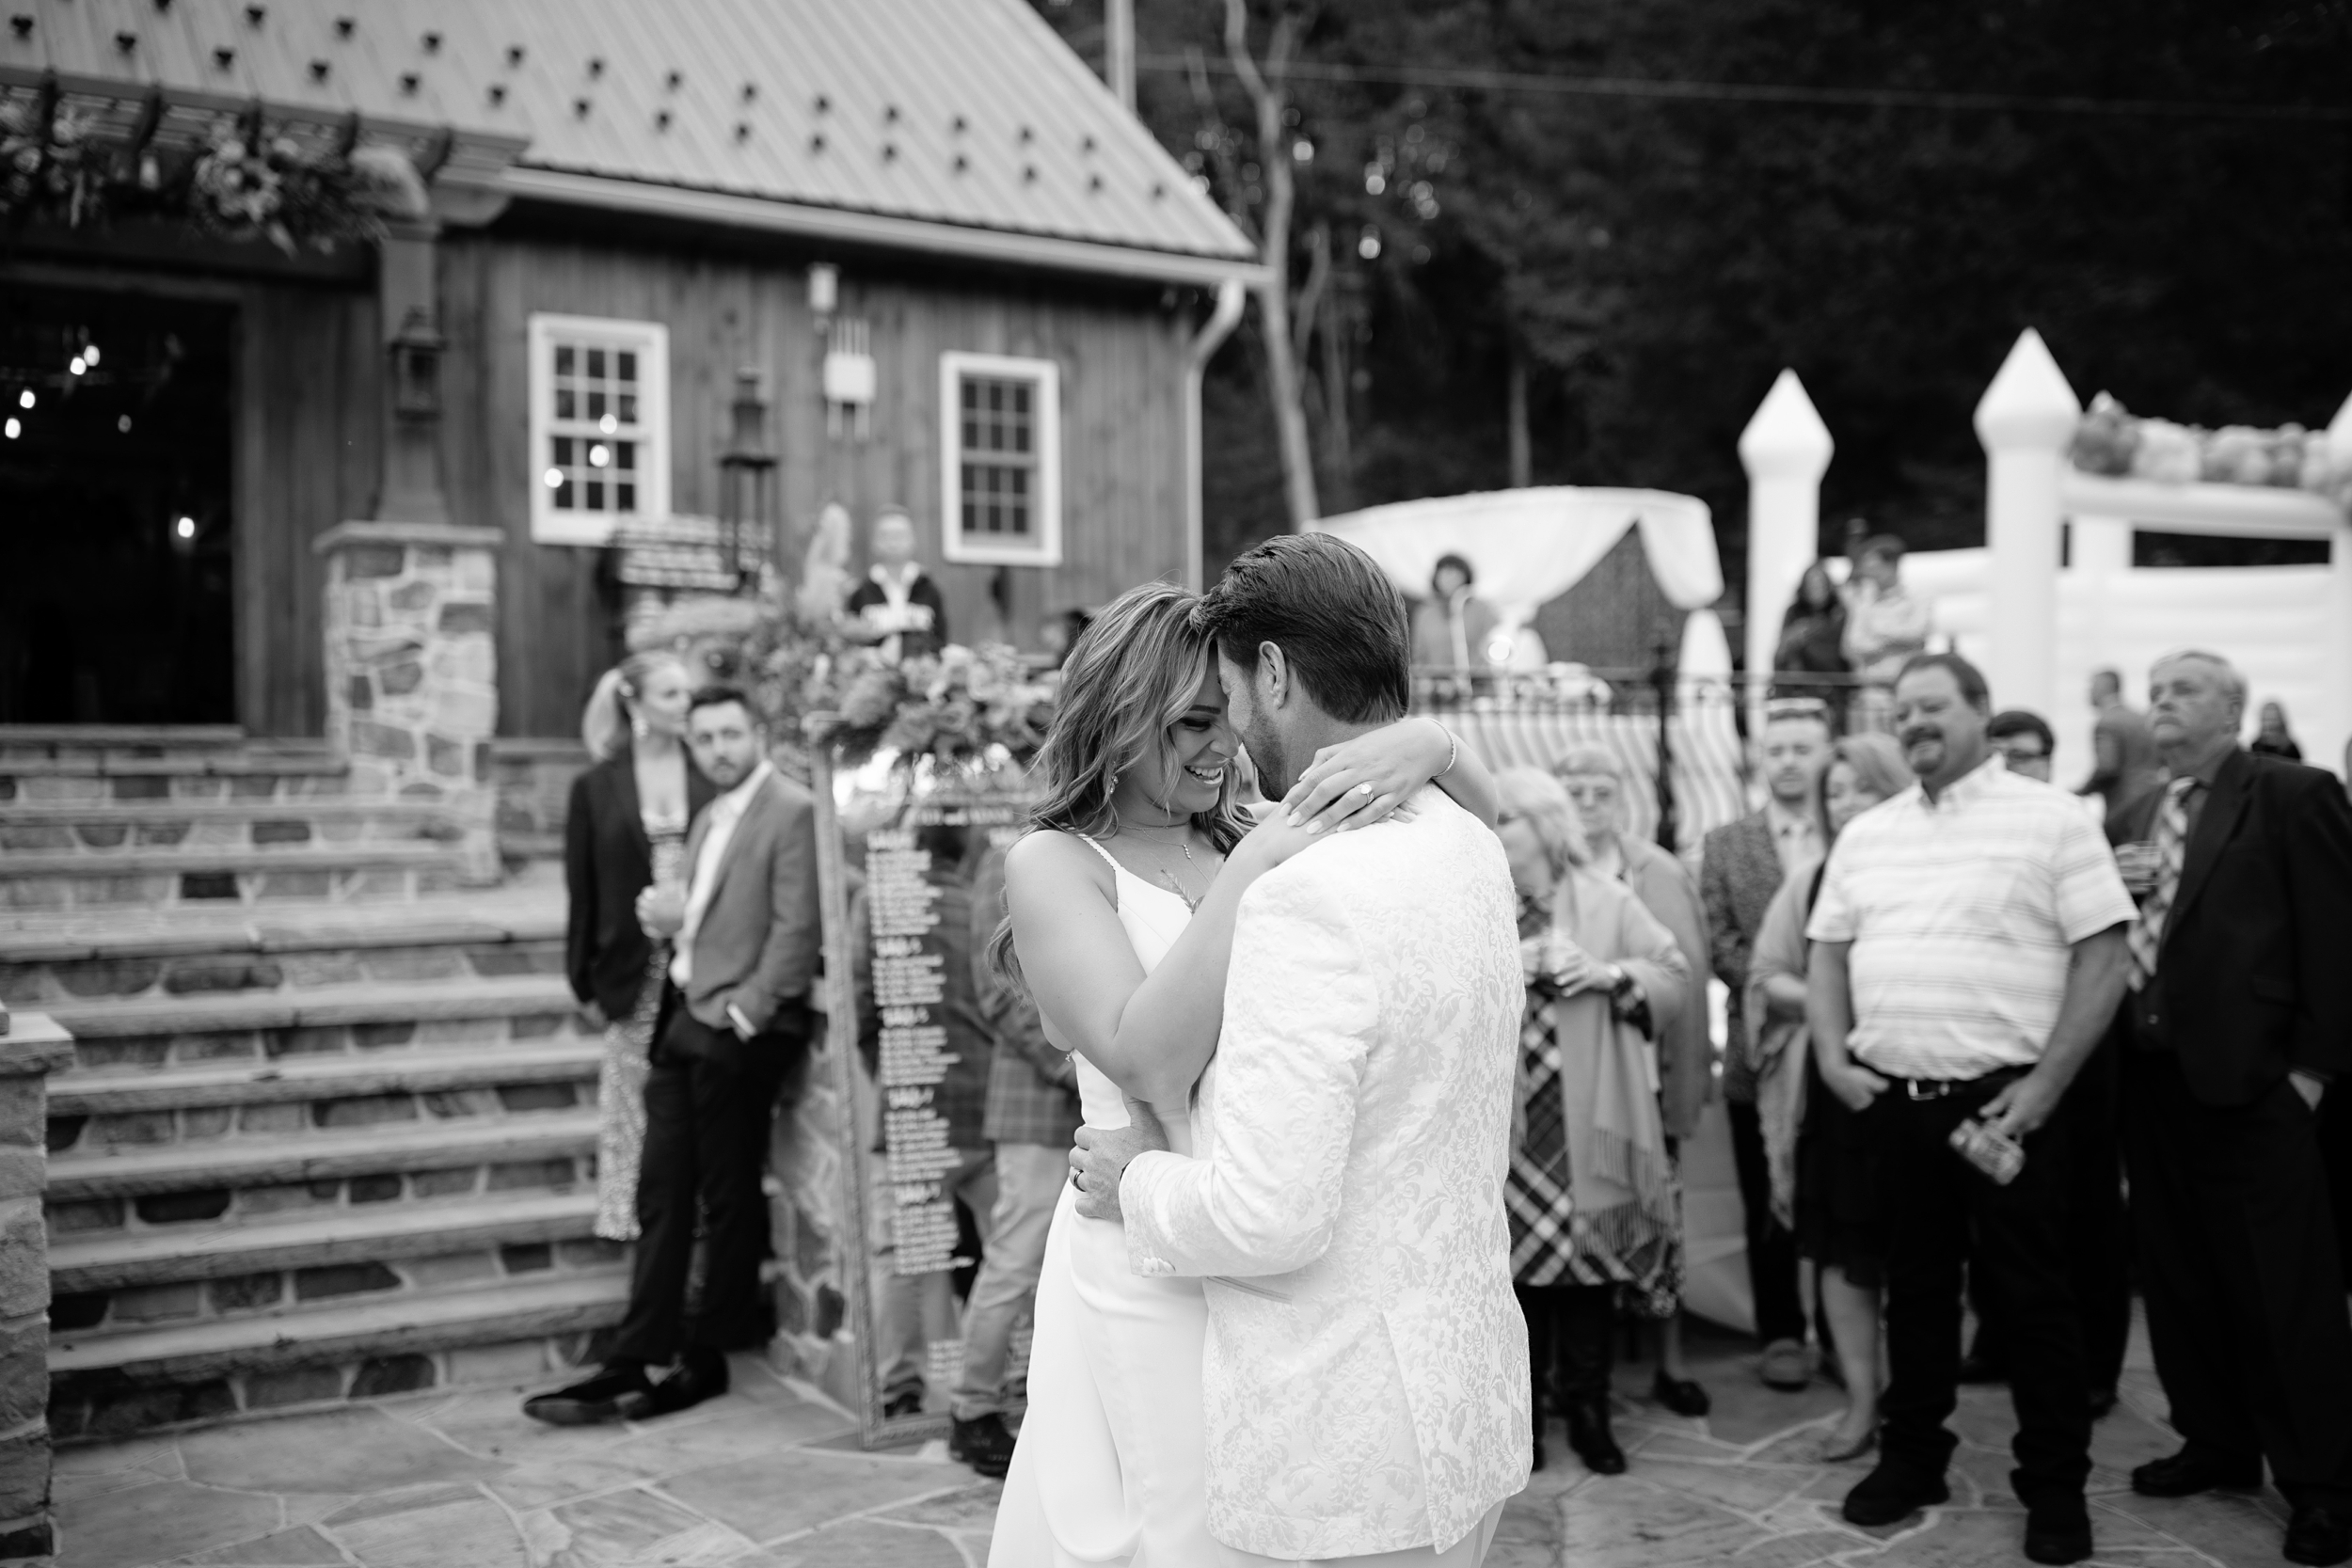 Pennsylvania Boho Luxury Fall Backyard Wedding with Bounce House-Philadelphia Wedding Photographer